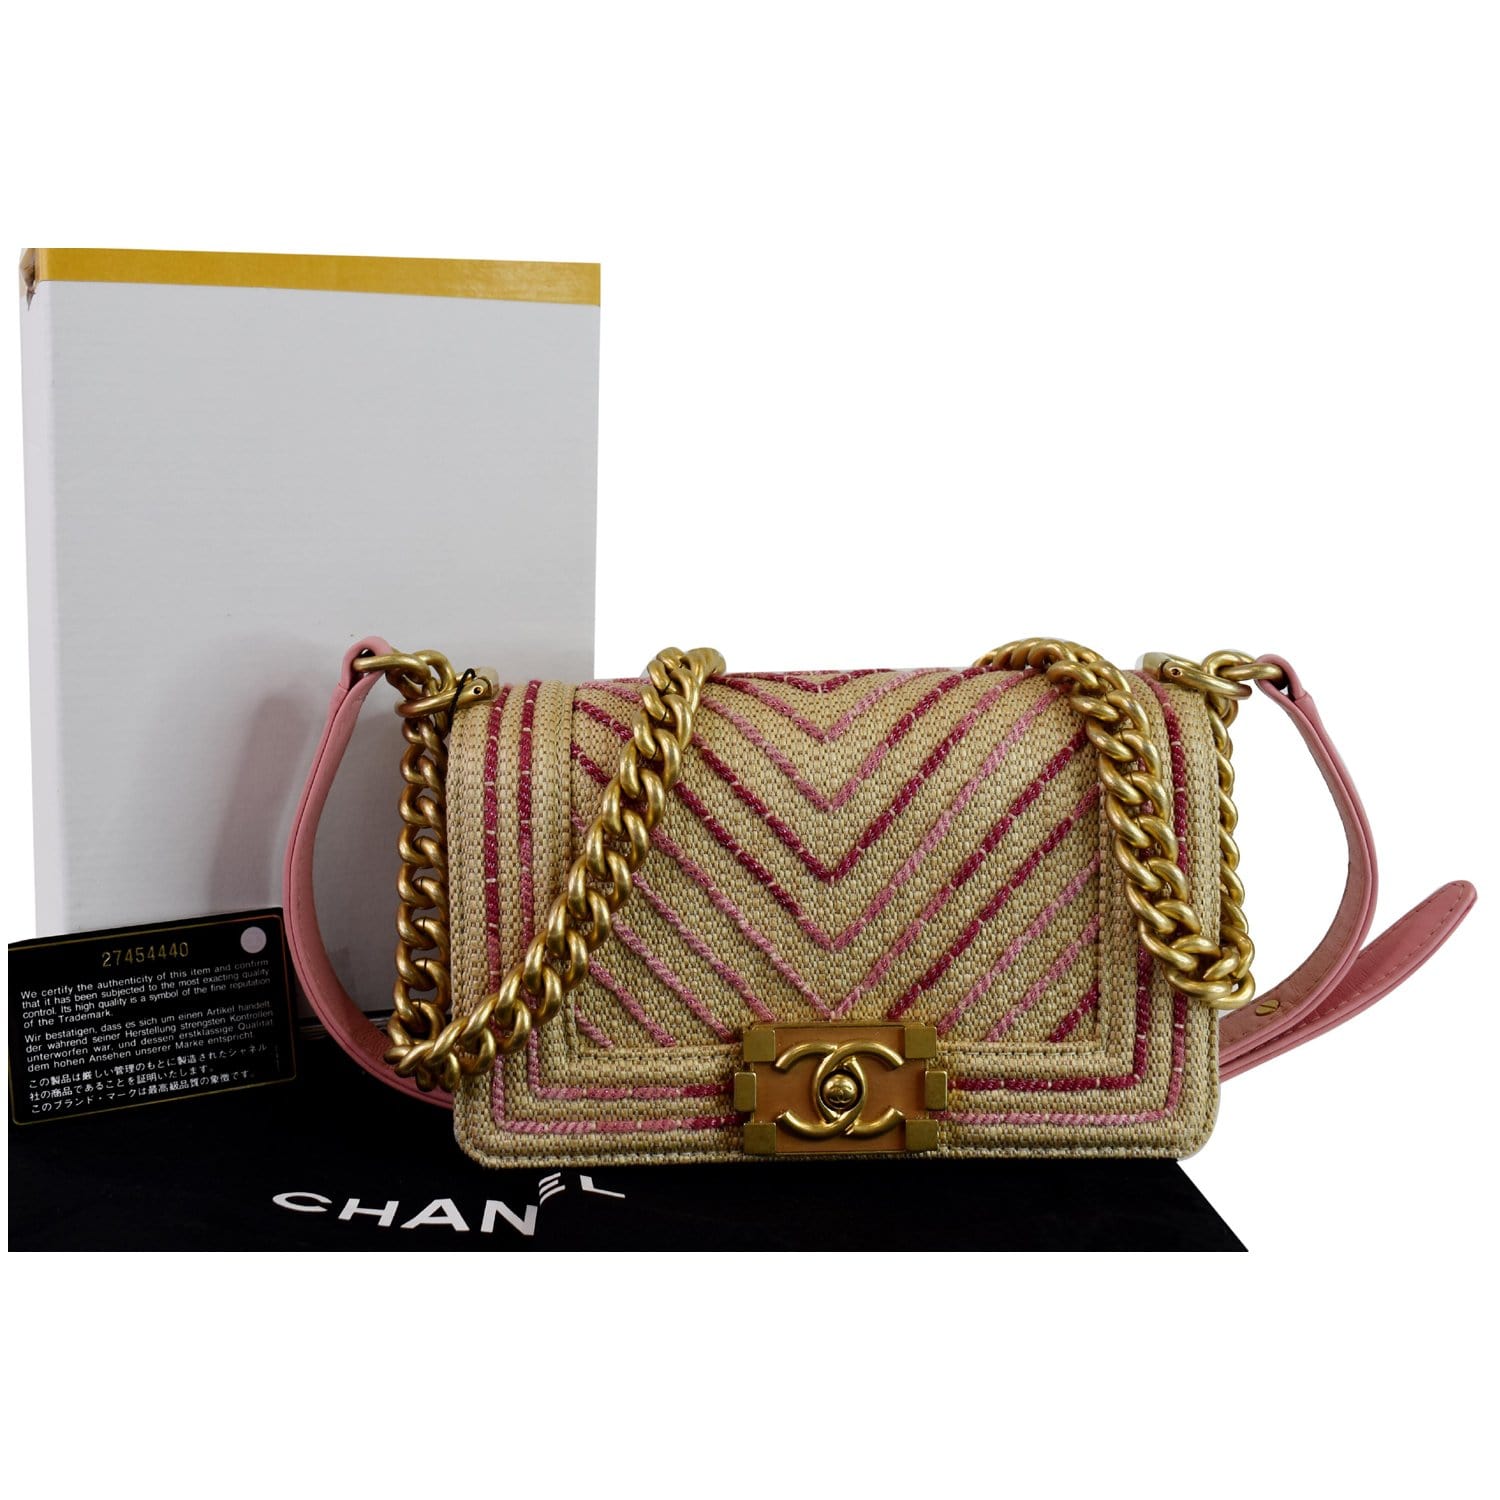 Straw Chanel shoulder bag - Gem